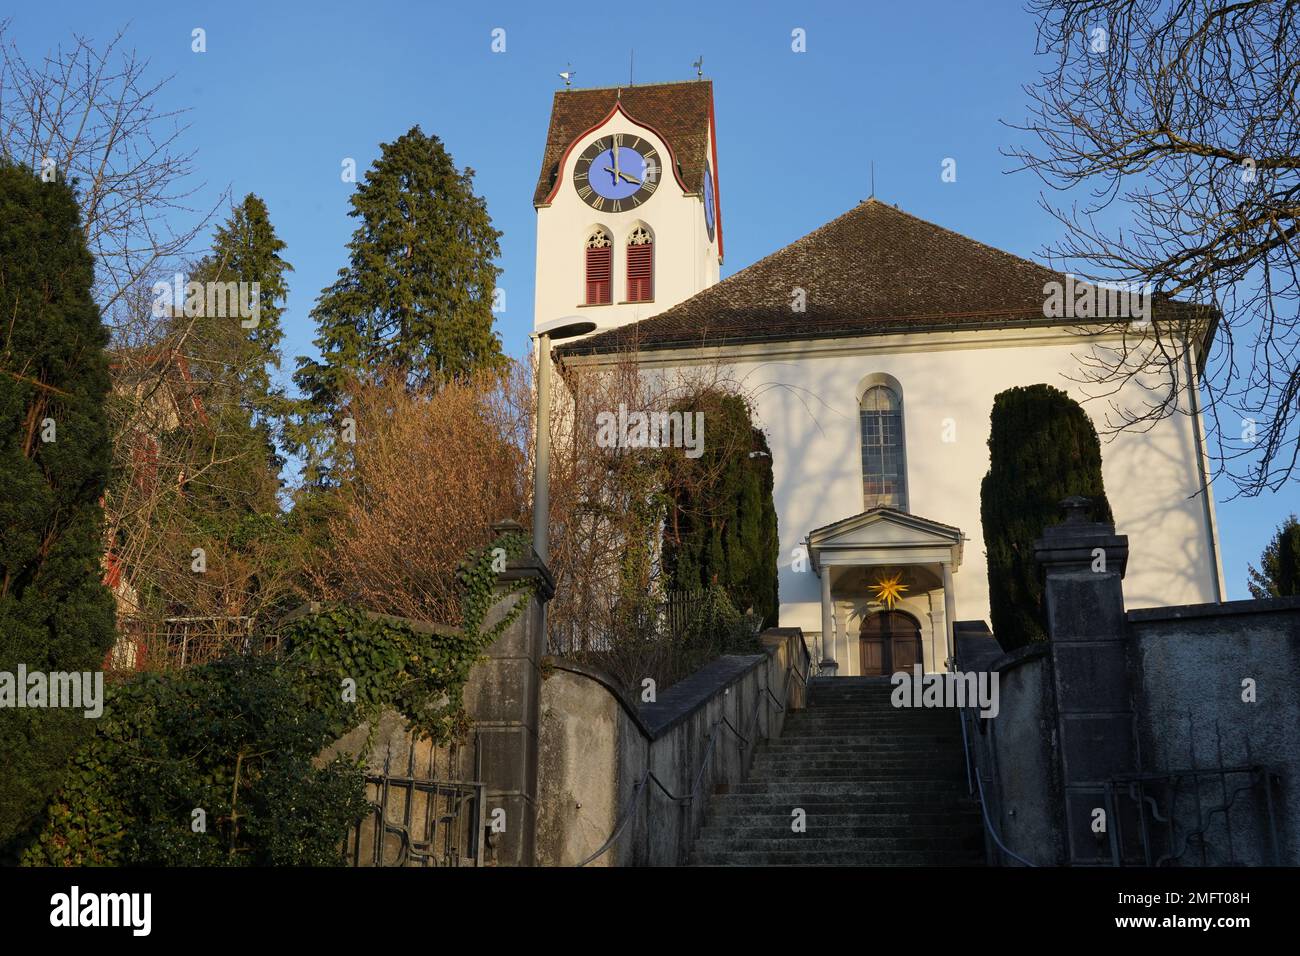 Église protestante de Hinwil, Suisse, prise en vue à l'avant de l'angle bas avec sa tour de l'horloge. Banque D'Images